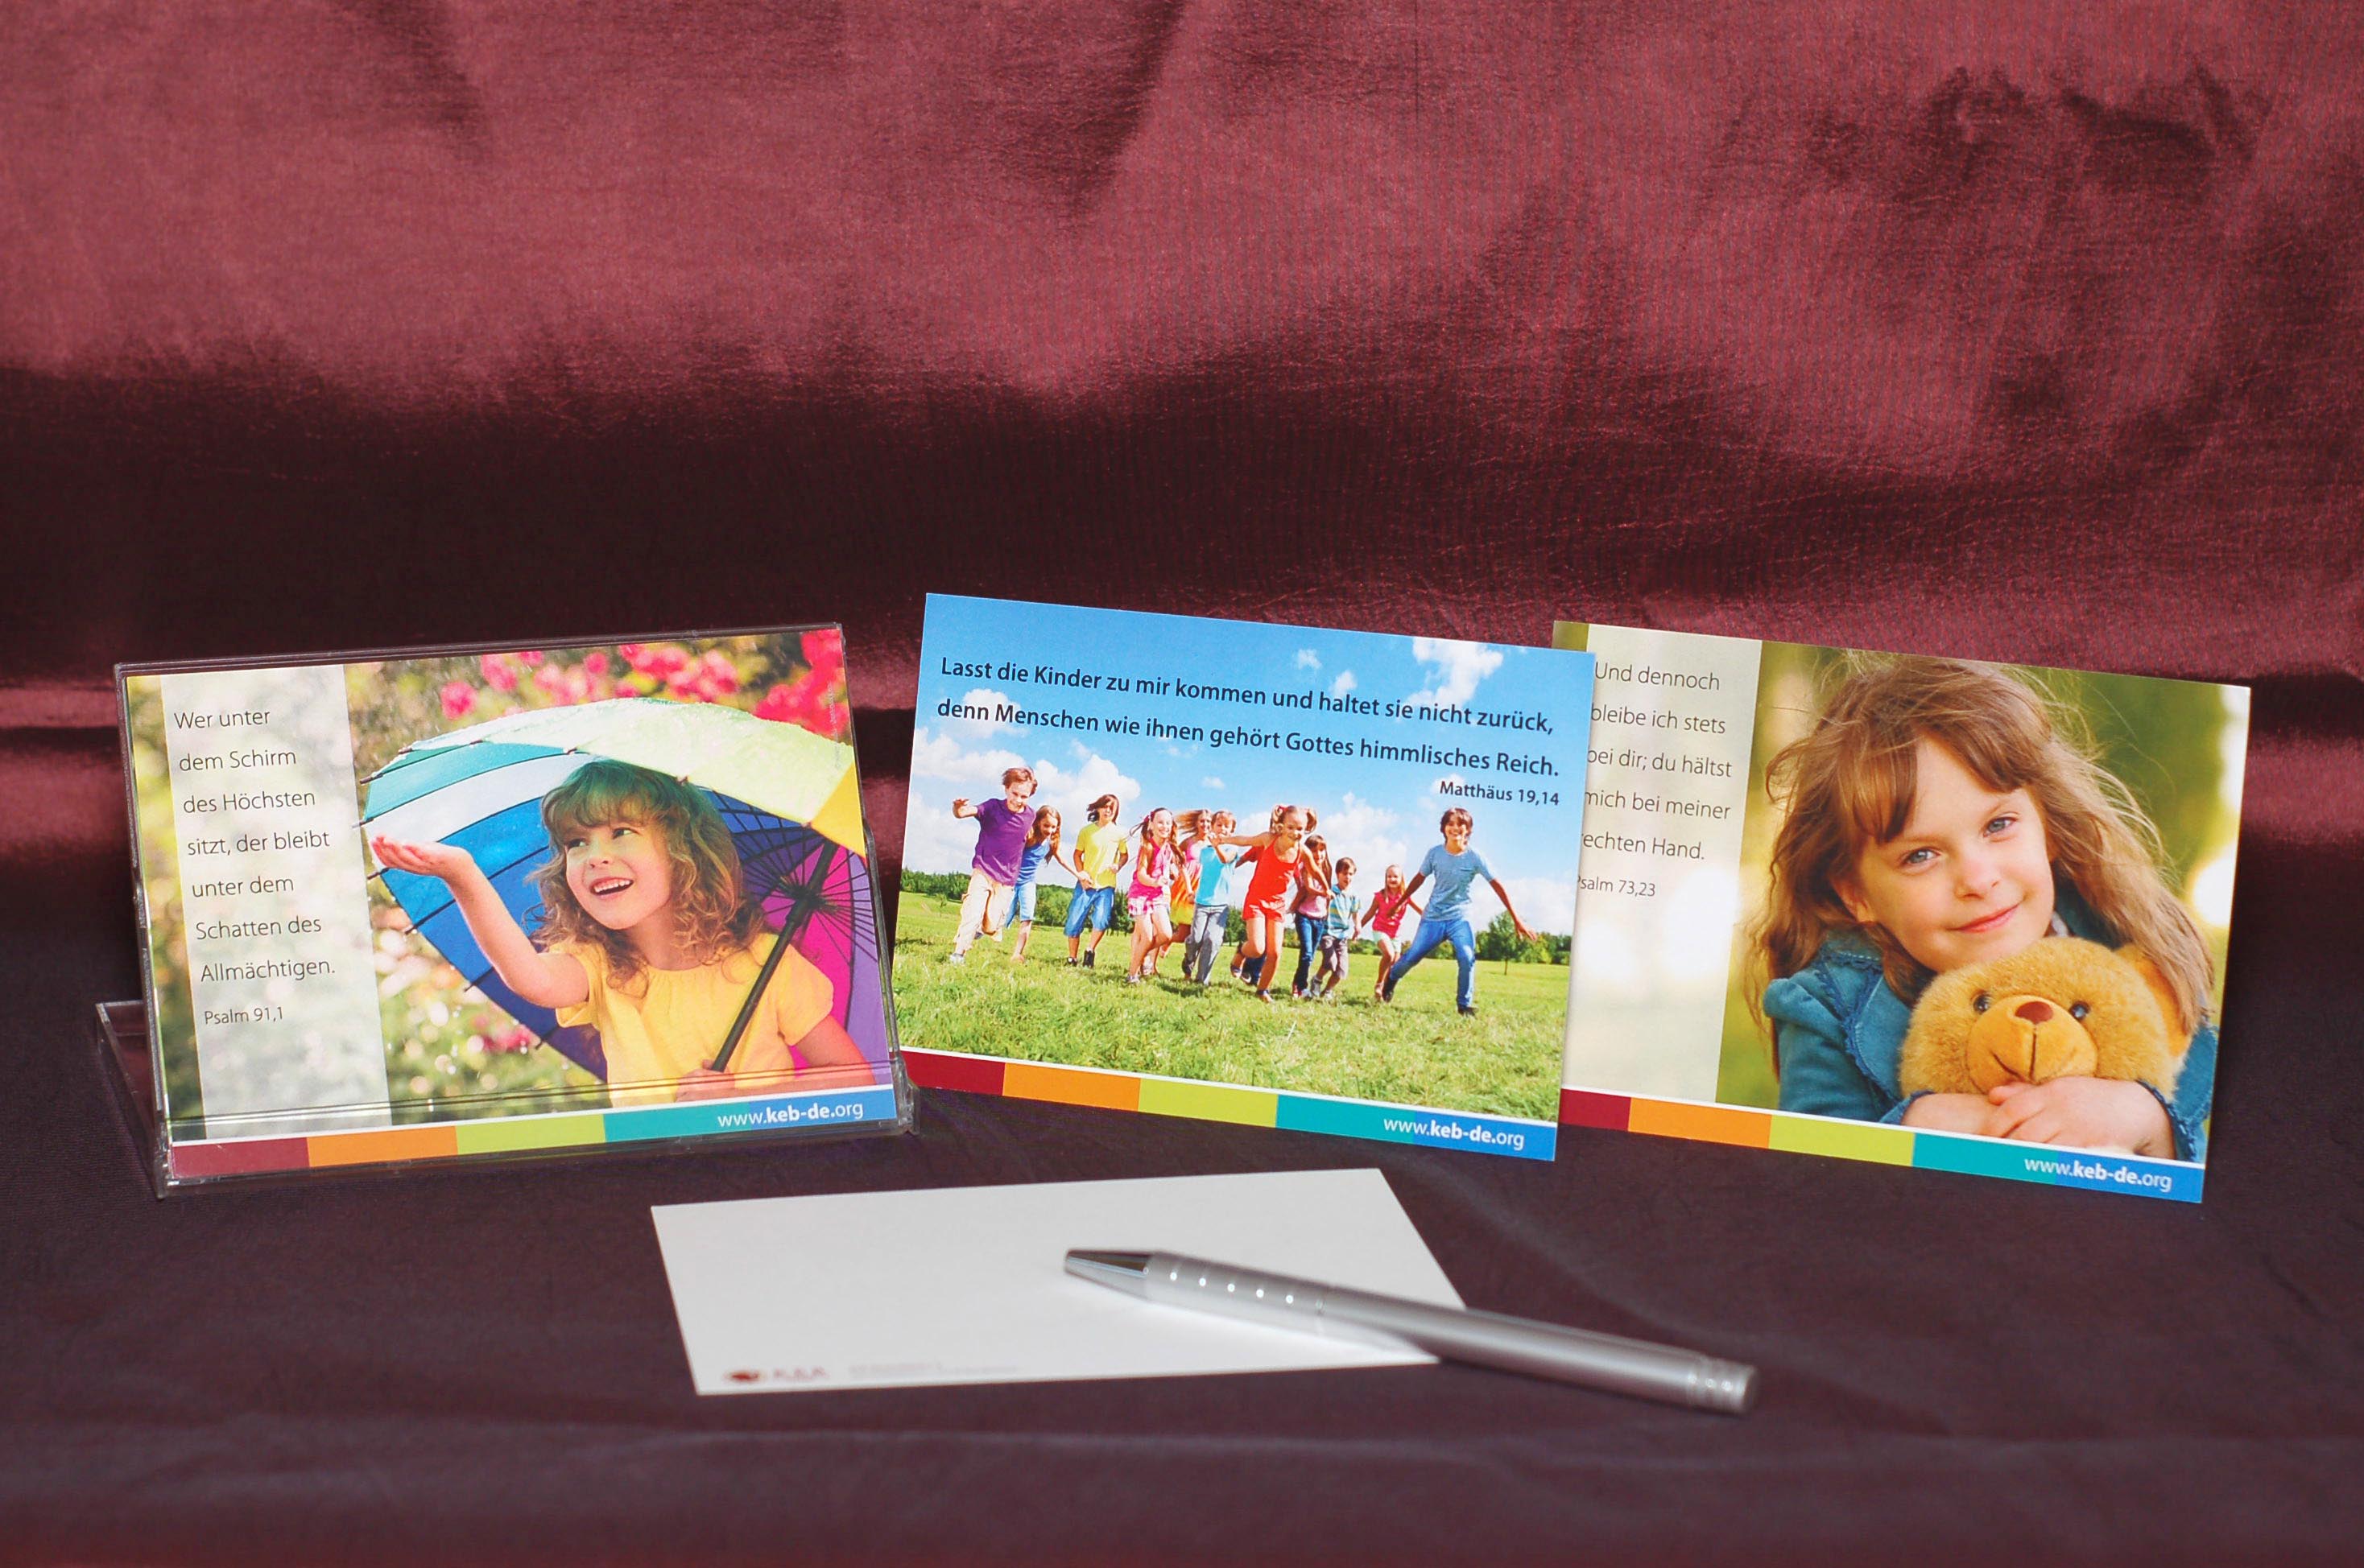 KEB-Postkarten mit Kinder-Motiven und Bibelversen